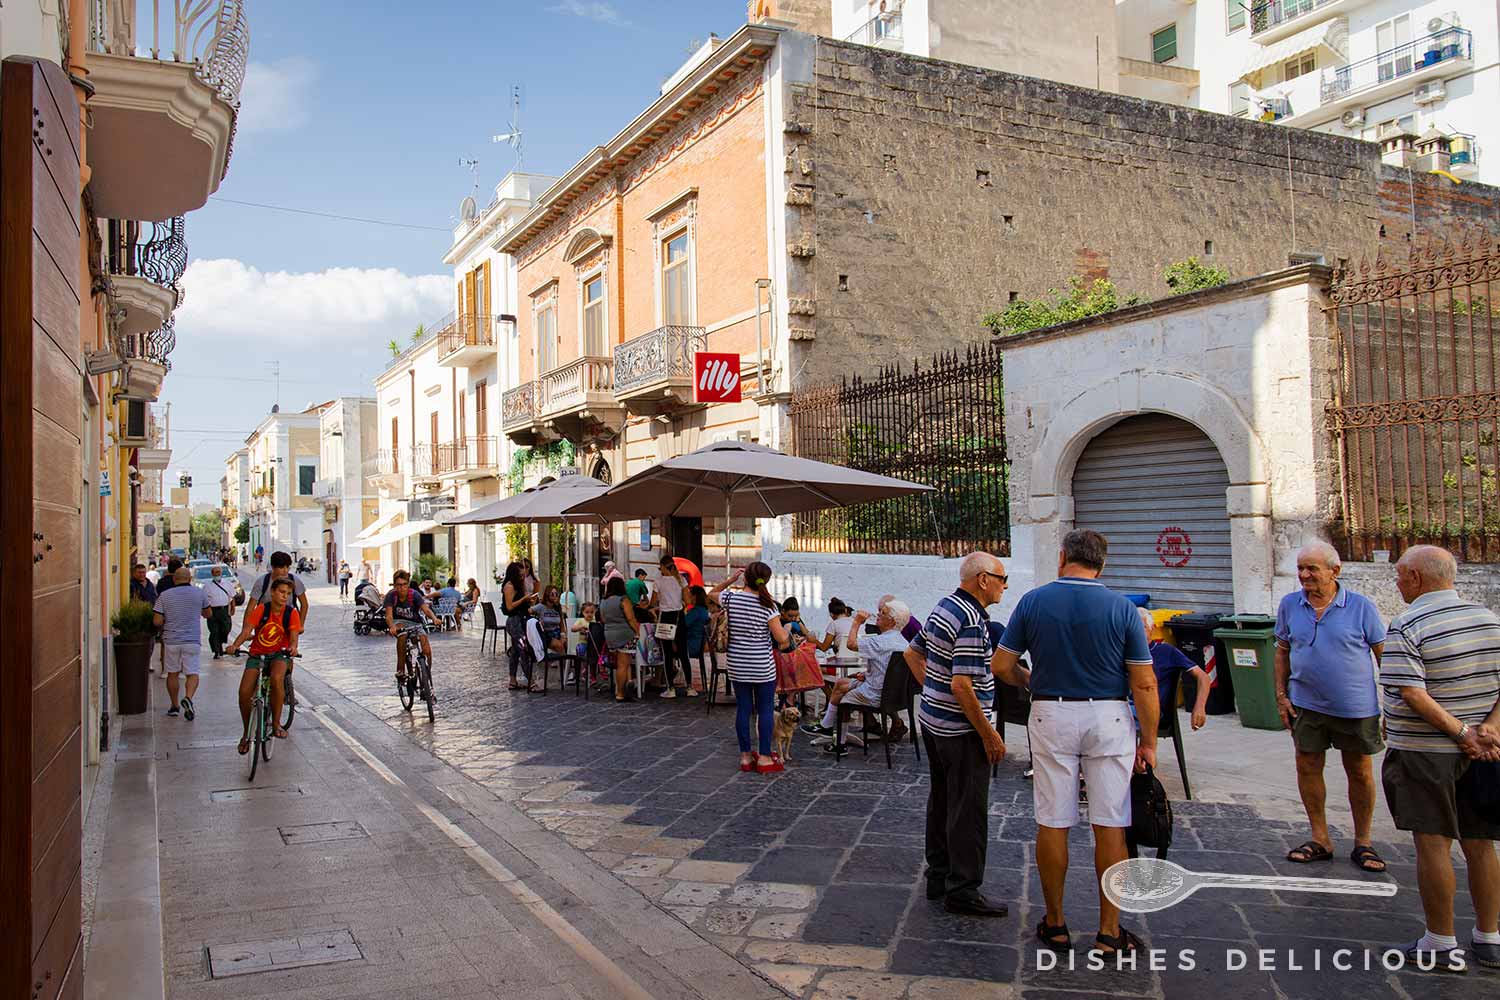 Menschen unterhalten sich vor einem Straßencafe in Manfredonia.